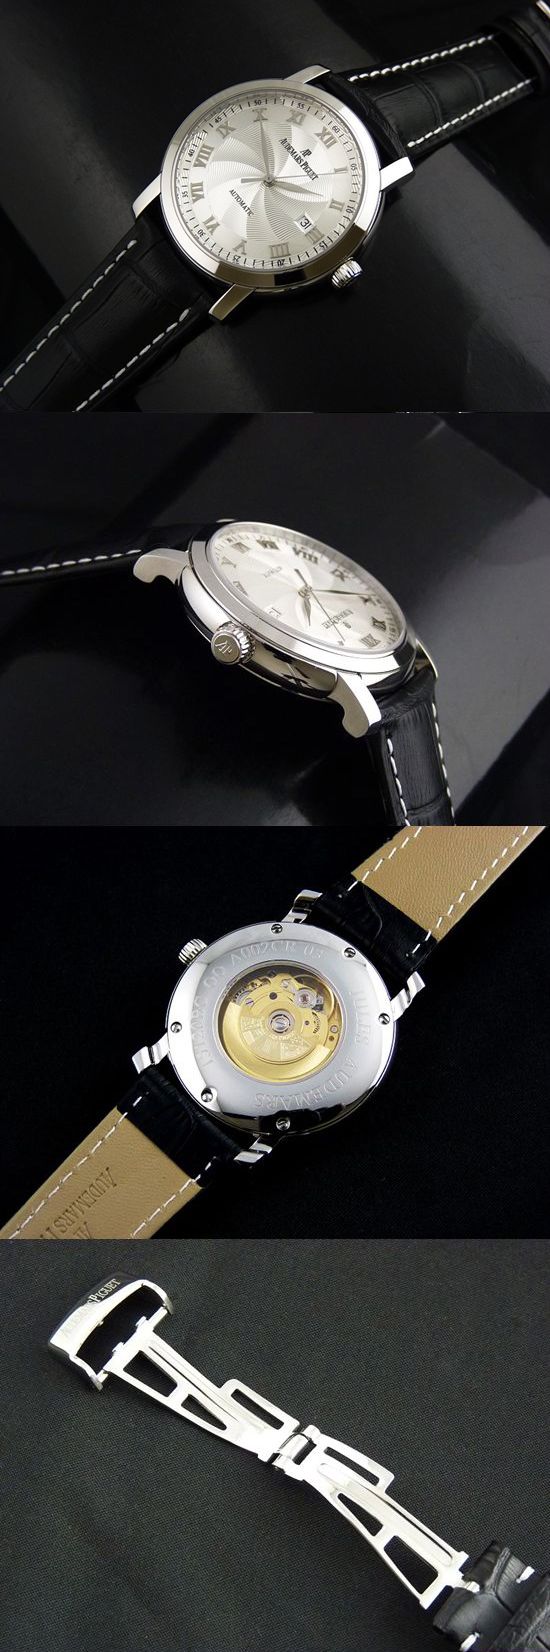 おしゃれなブランド時計がAUDEMARS PIGUET-AP00017S-オーデマピゲ-ジュール オーデマ-男性用を提供します.